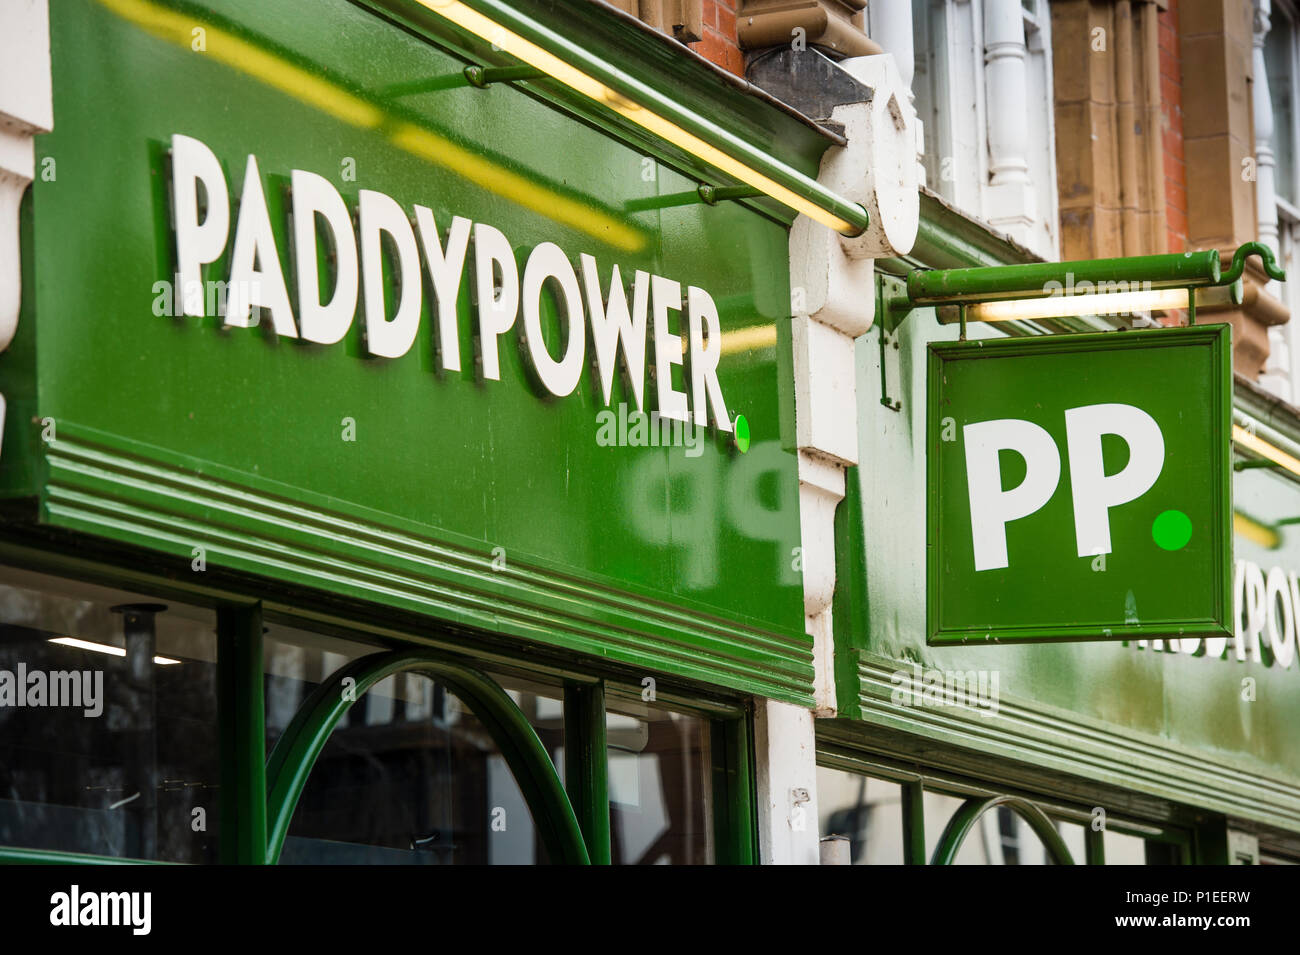 High street il gioco d'azzardo nel Regno Unito: Paddy Power, PP, scommesse shop esterno, Hereford, England Regno Unito Foto Stock